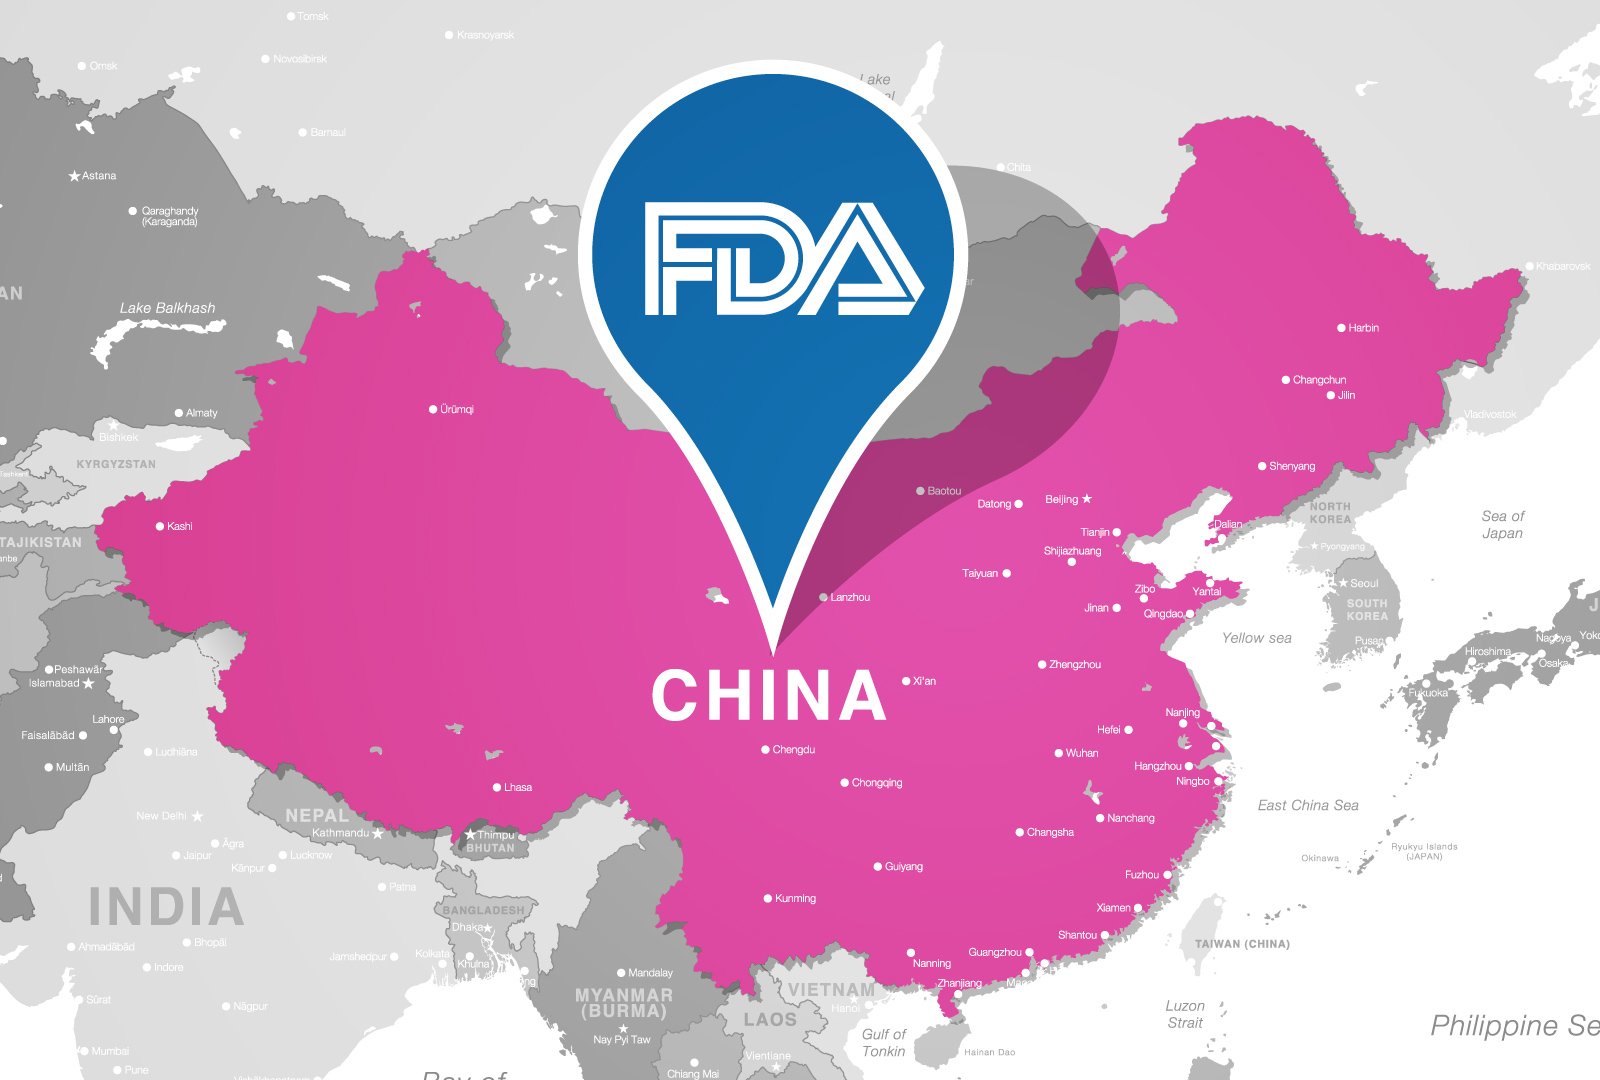 FDA China